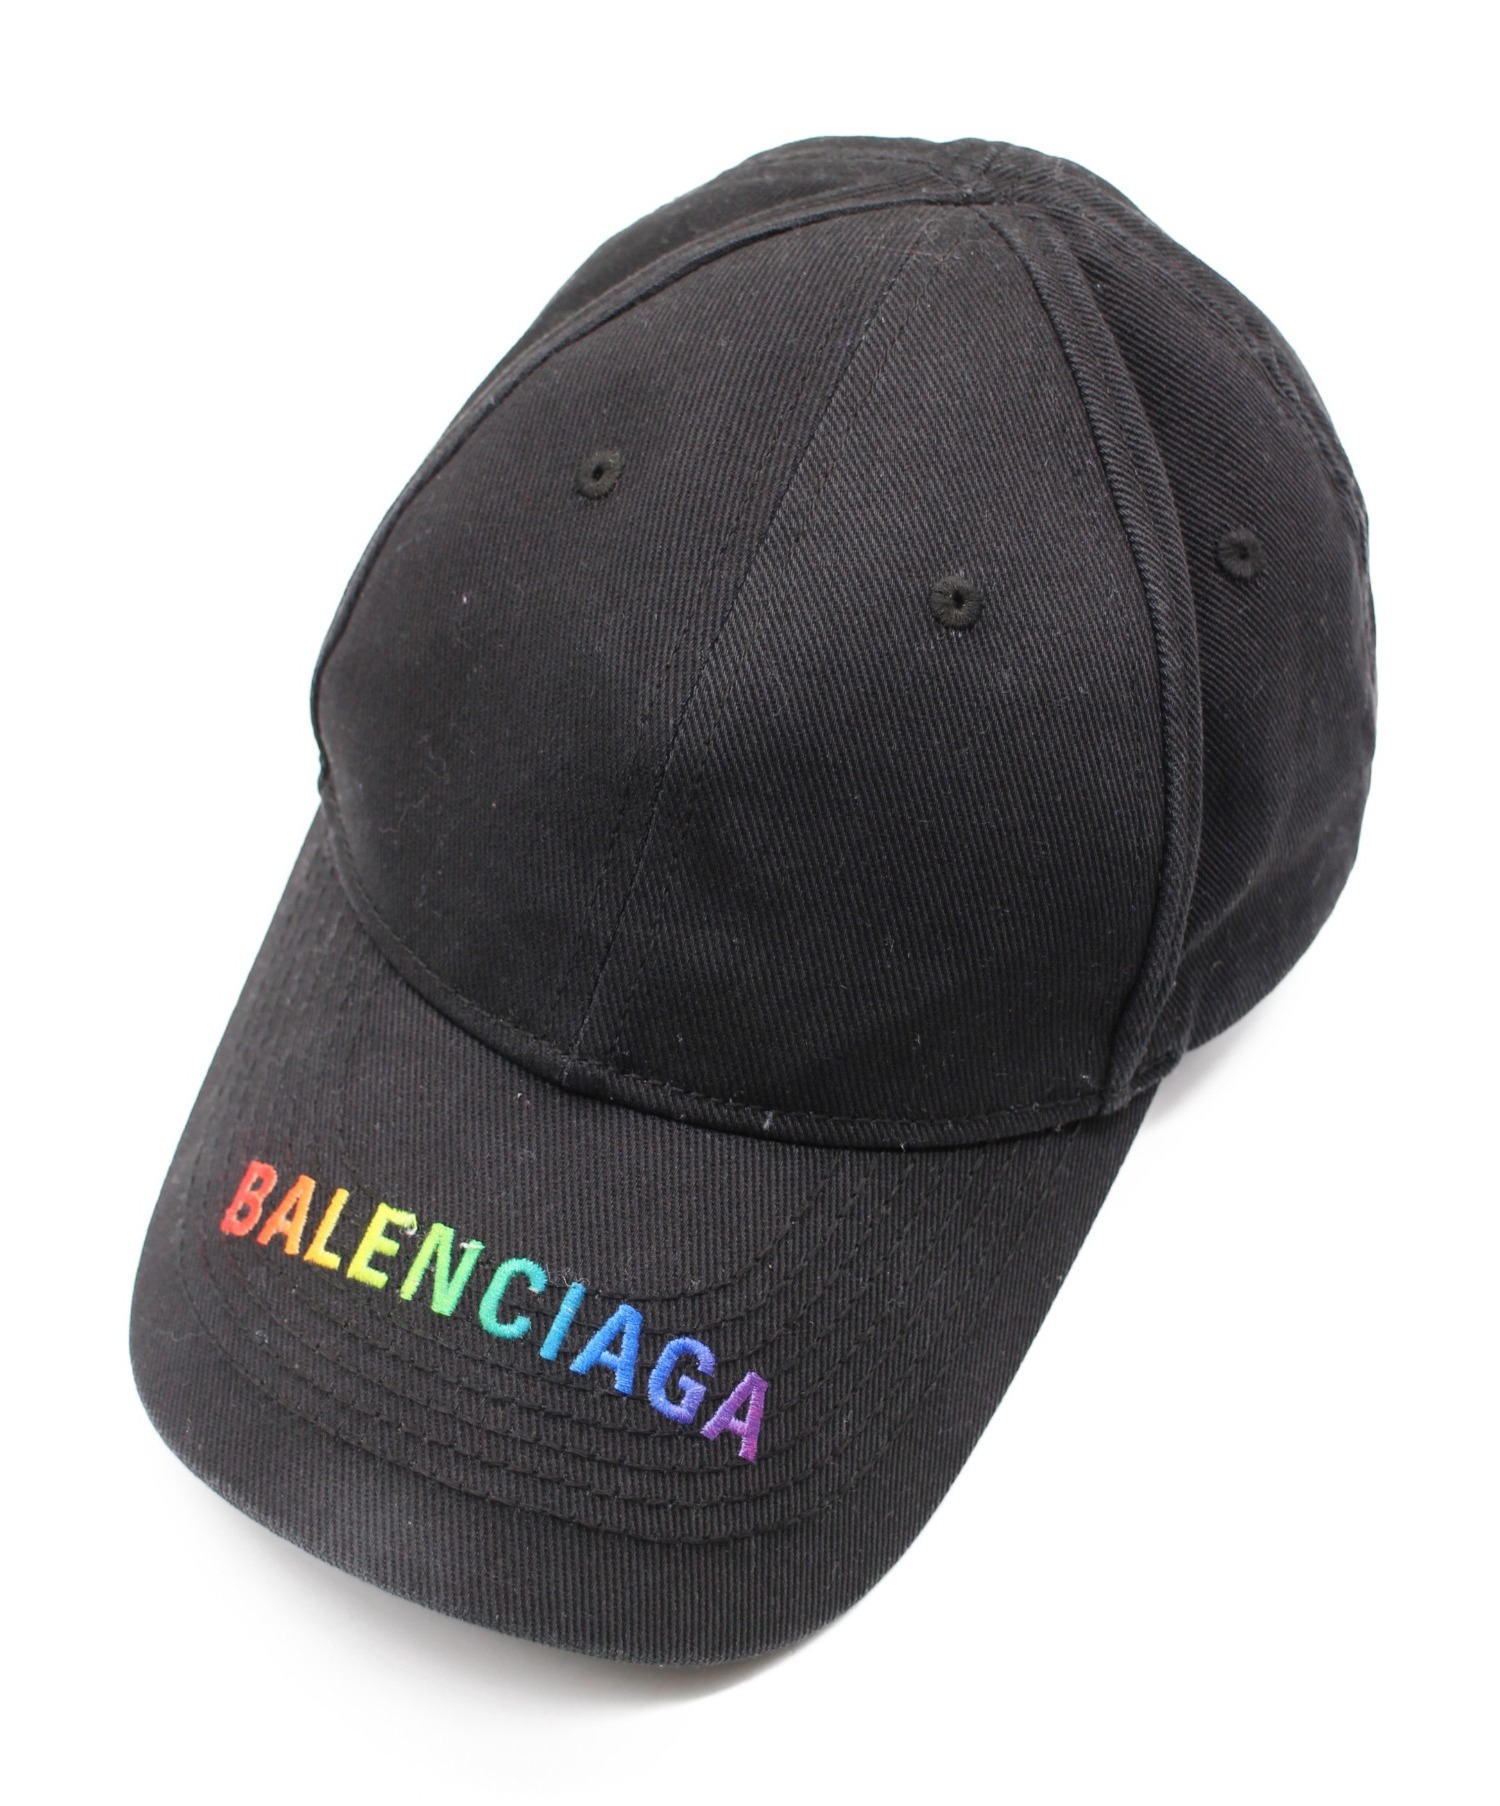 BALENCIAGA (バレンシアガ) 19AW/レインボーロゴキャップ ブラック サイズ:L/58